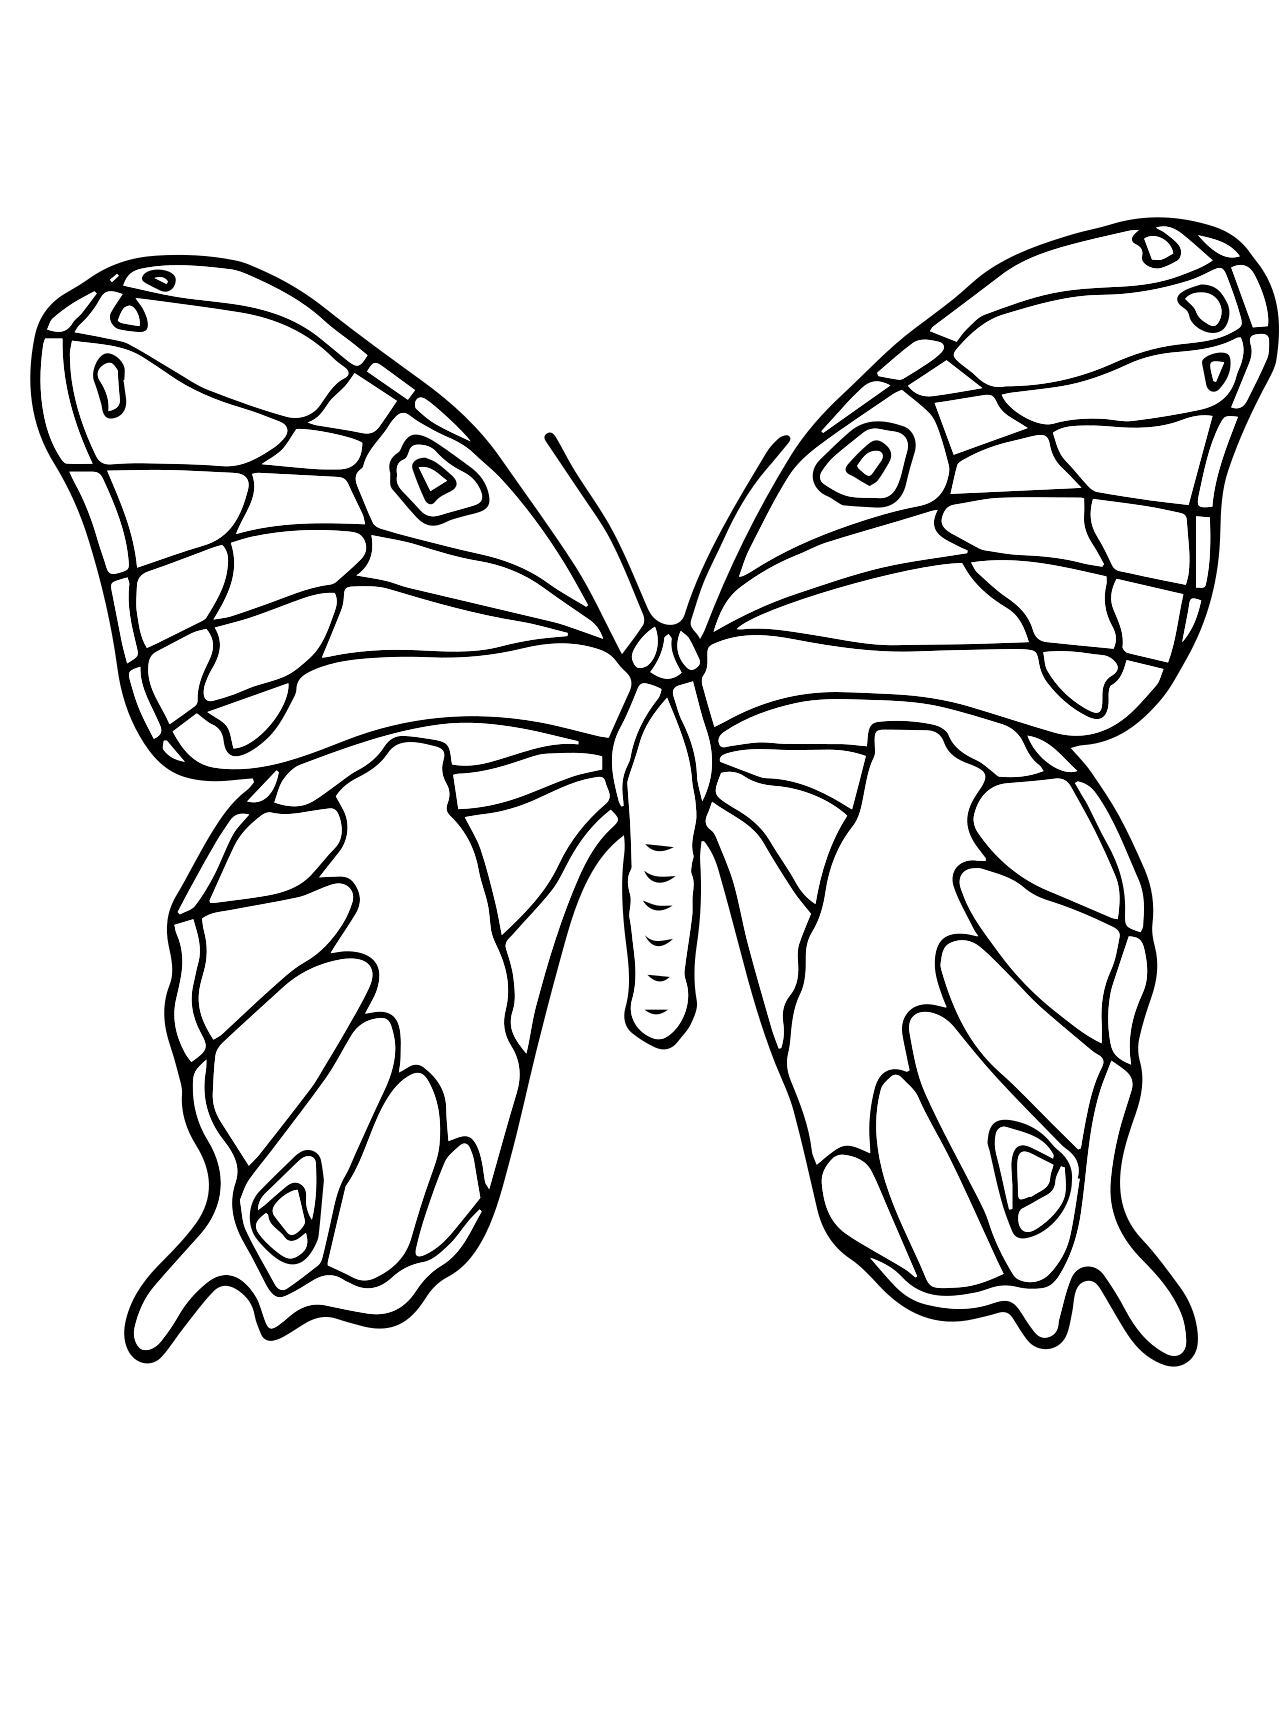 Раскраски для детей 4 5 бабочки. Раскраска "бабочки". Бабочка раскраска для детей. Бабочка раскраска для малышей. Рисунок бабочки для раскрашивания.